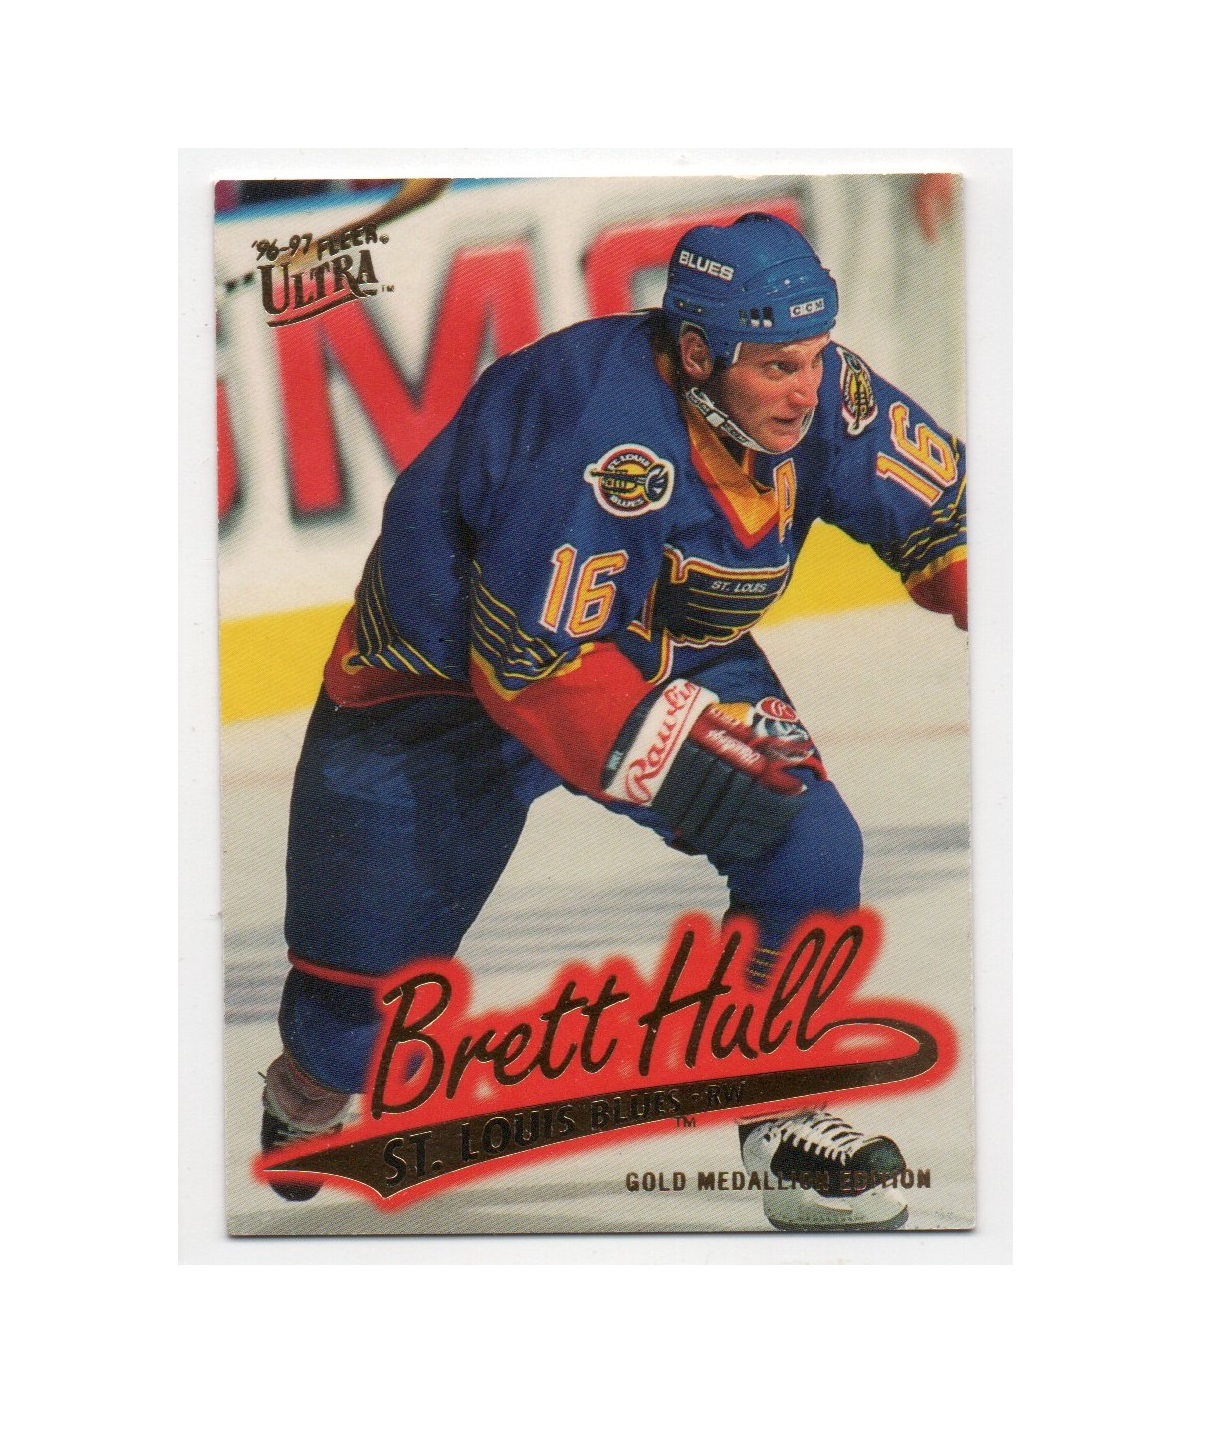 1996-97 Ultra Gold Medallion #G146 Brett Hull (15-X210-BLUES)